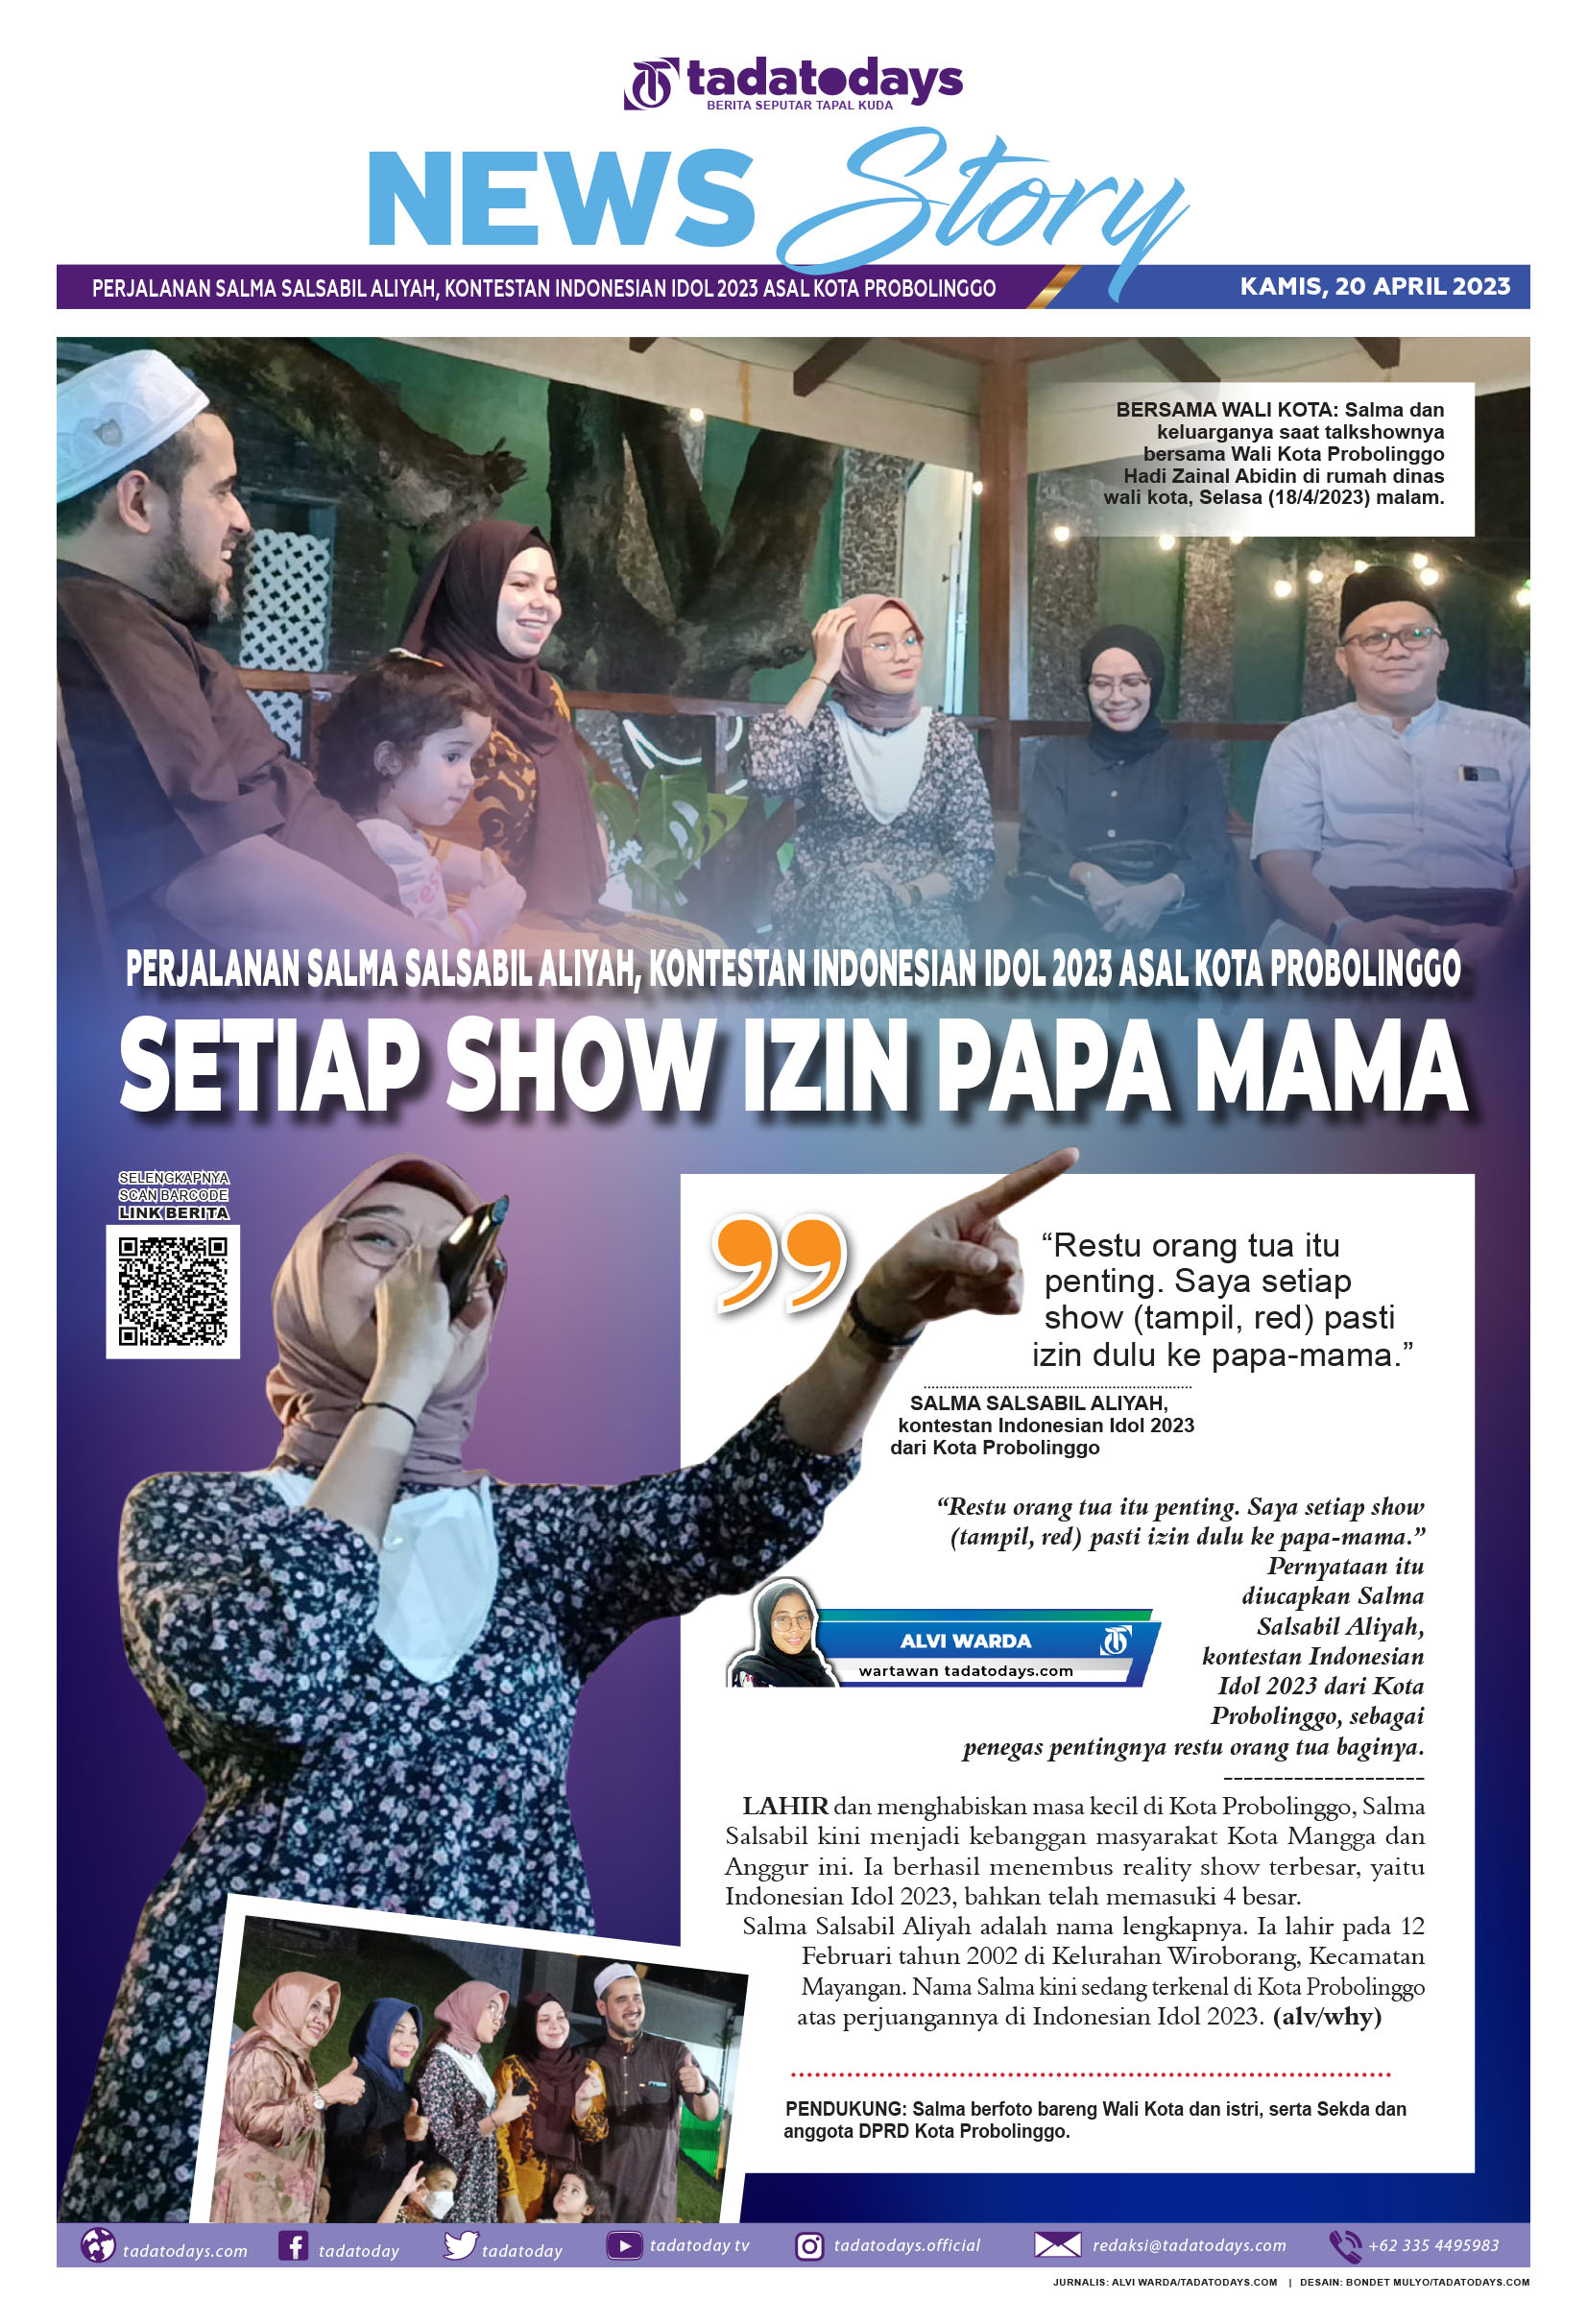 Perjalanan Salma Salsabil Aliyah, Kontestan Indonesian Idol 2023 dari Kota Probolinggo